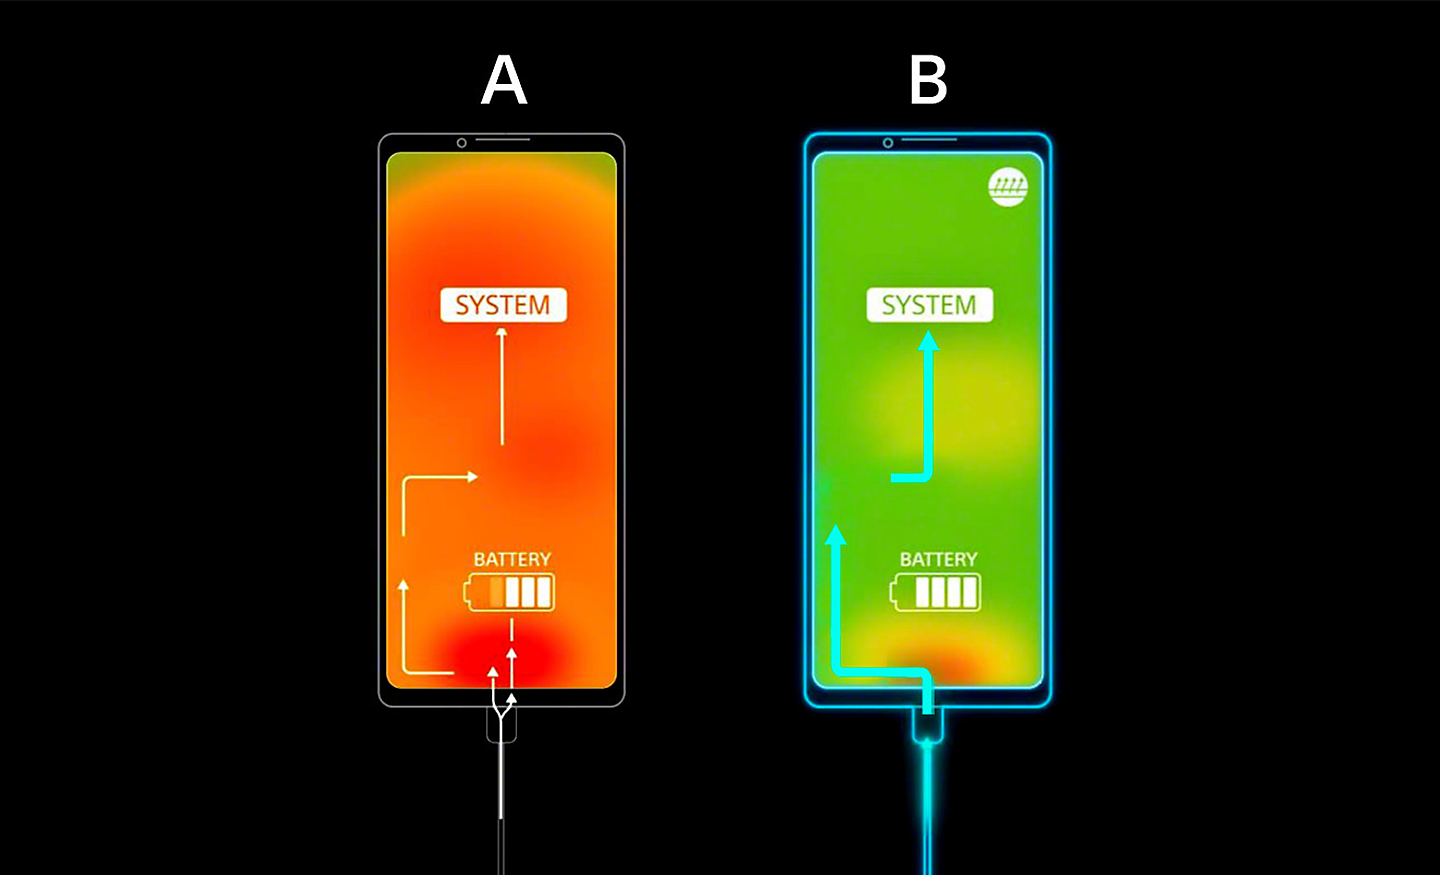 Afbeelding waarin twee smartphones worden vergeleken: de warme is oranje, de koele is groen